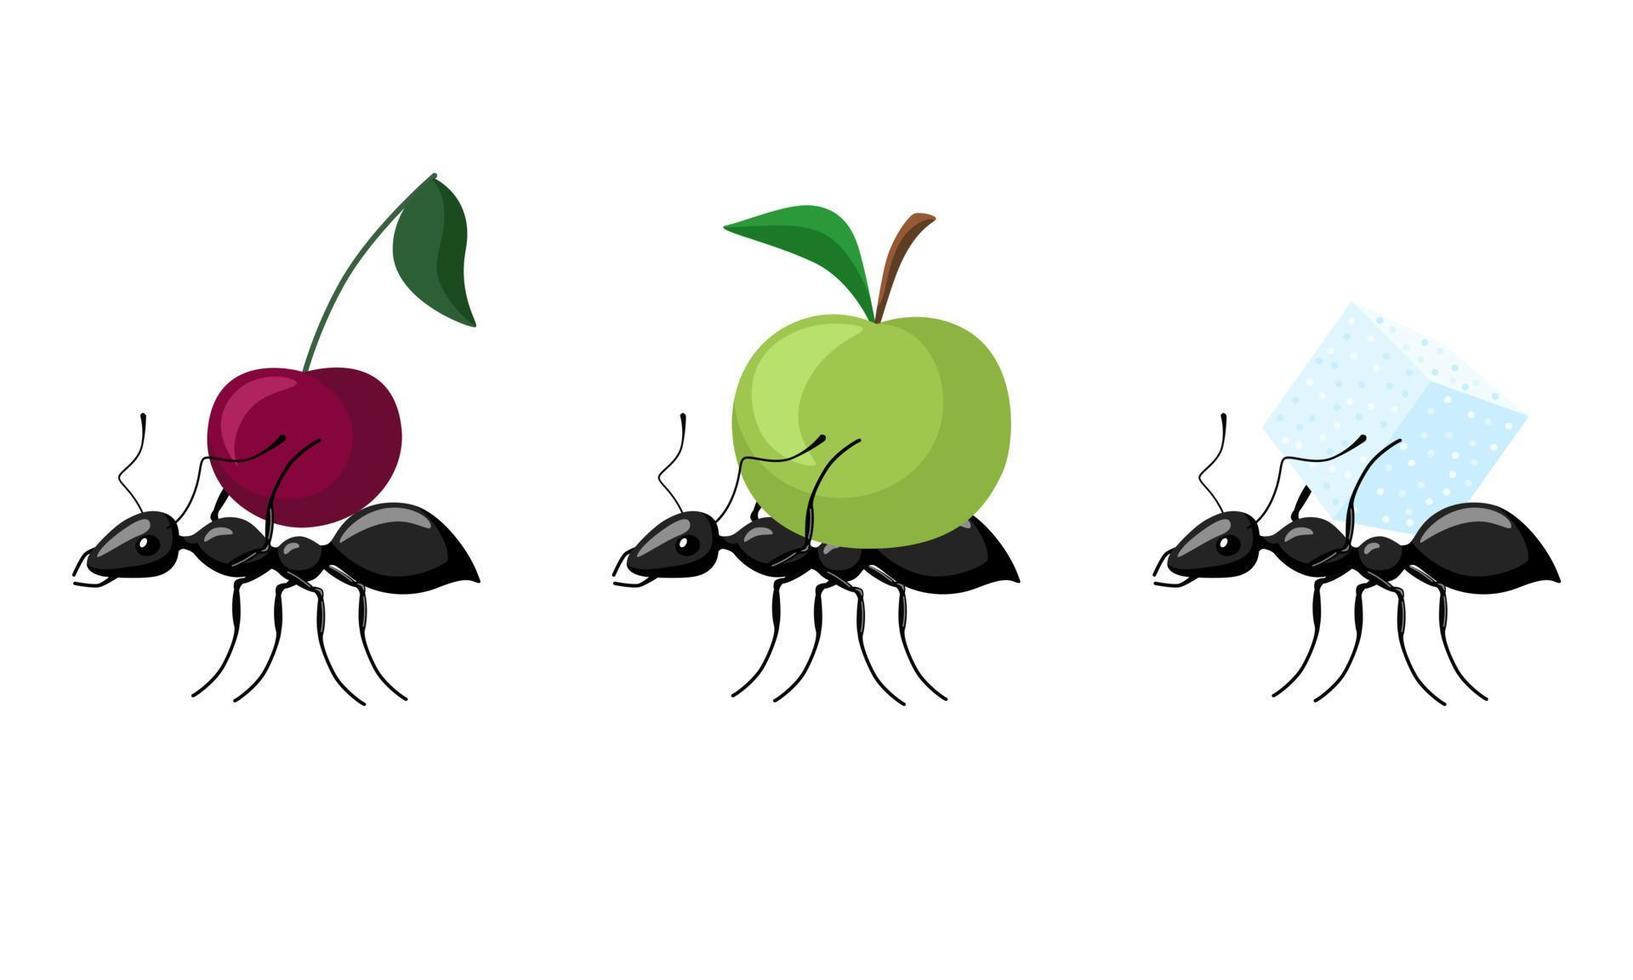 set mieren uitvoering van verschillende vruchten geïsoleerd op een witte achtergrond. kolonie mieren die appel, kers, suiker dragen en naar de mierenhoop lopen. vector